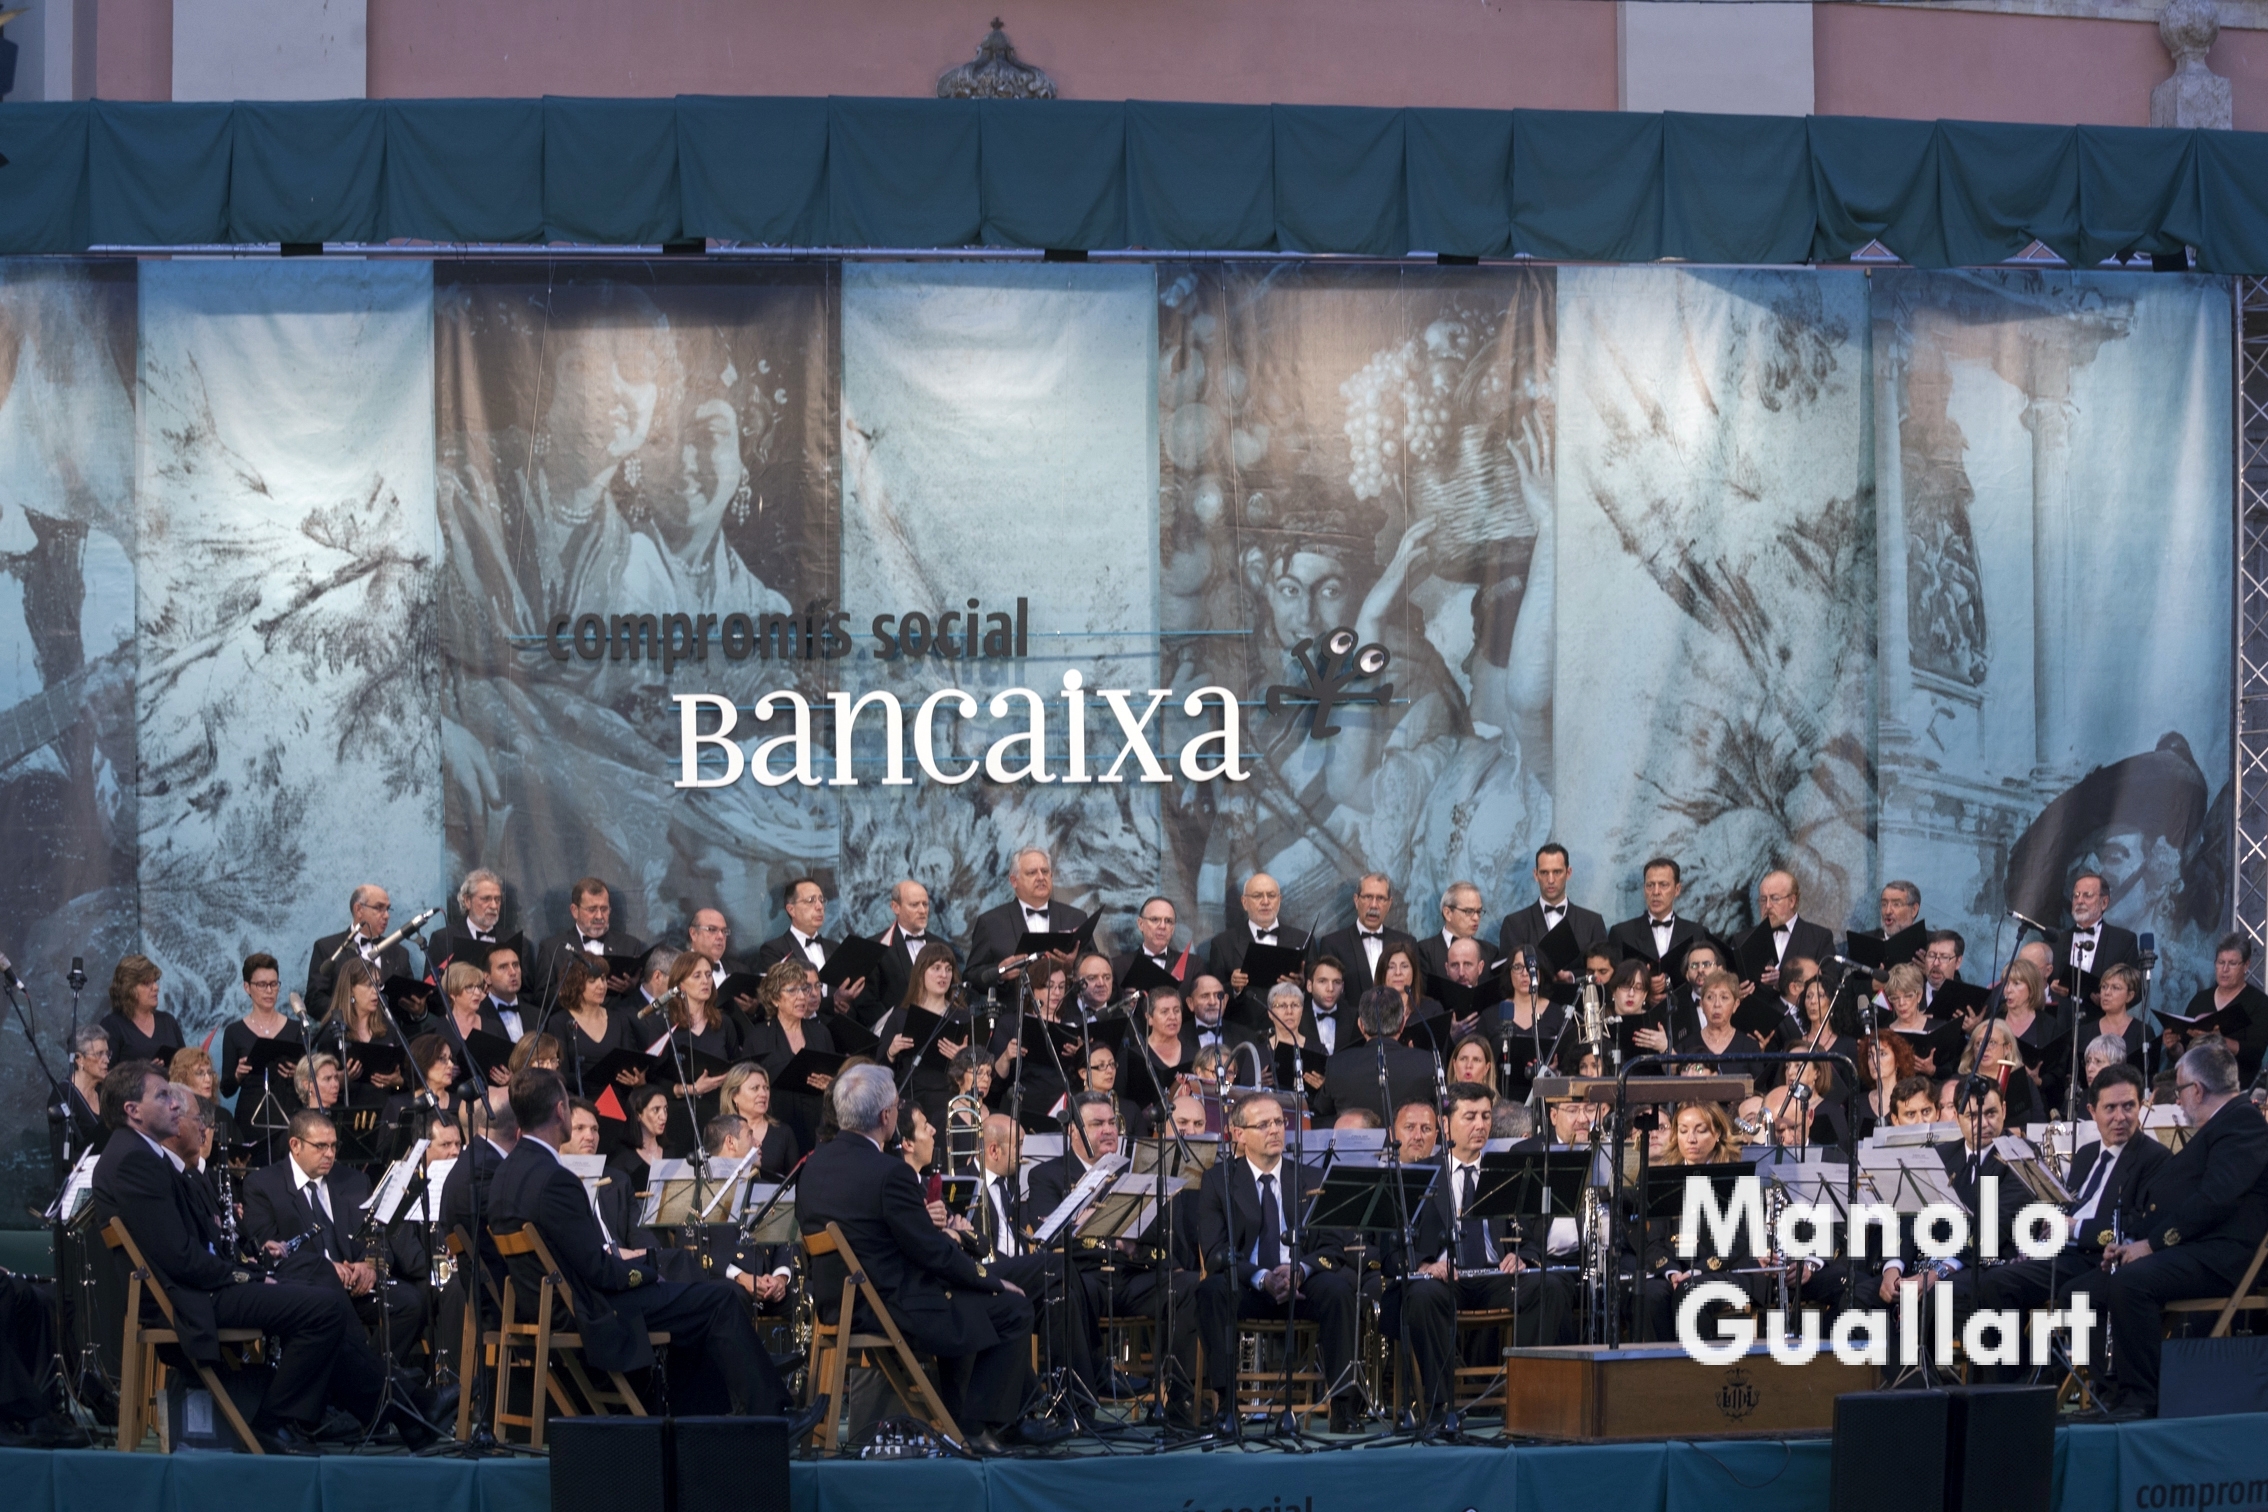 La Banda Municipal de Valencia en la "Ronda a la Verge". Foto de Manolo Guallart.